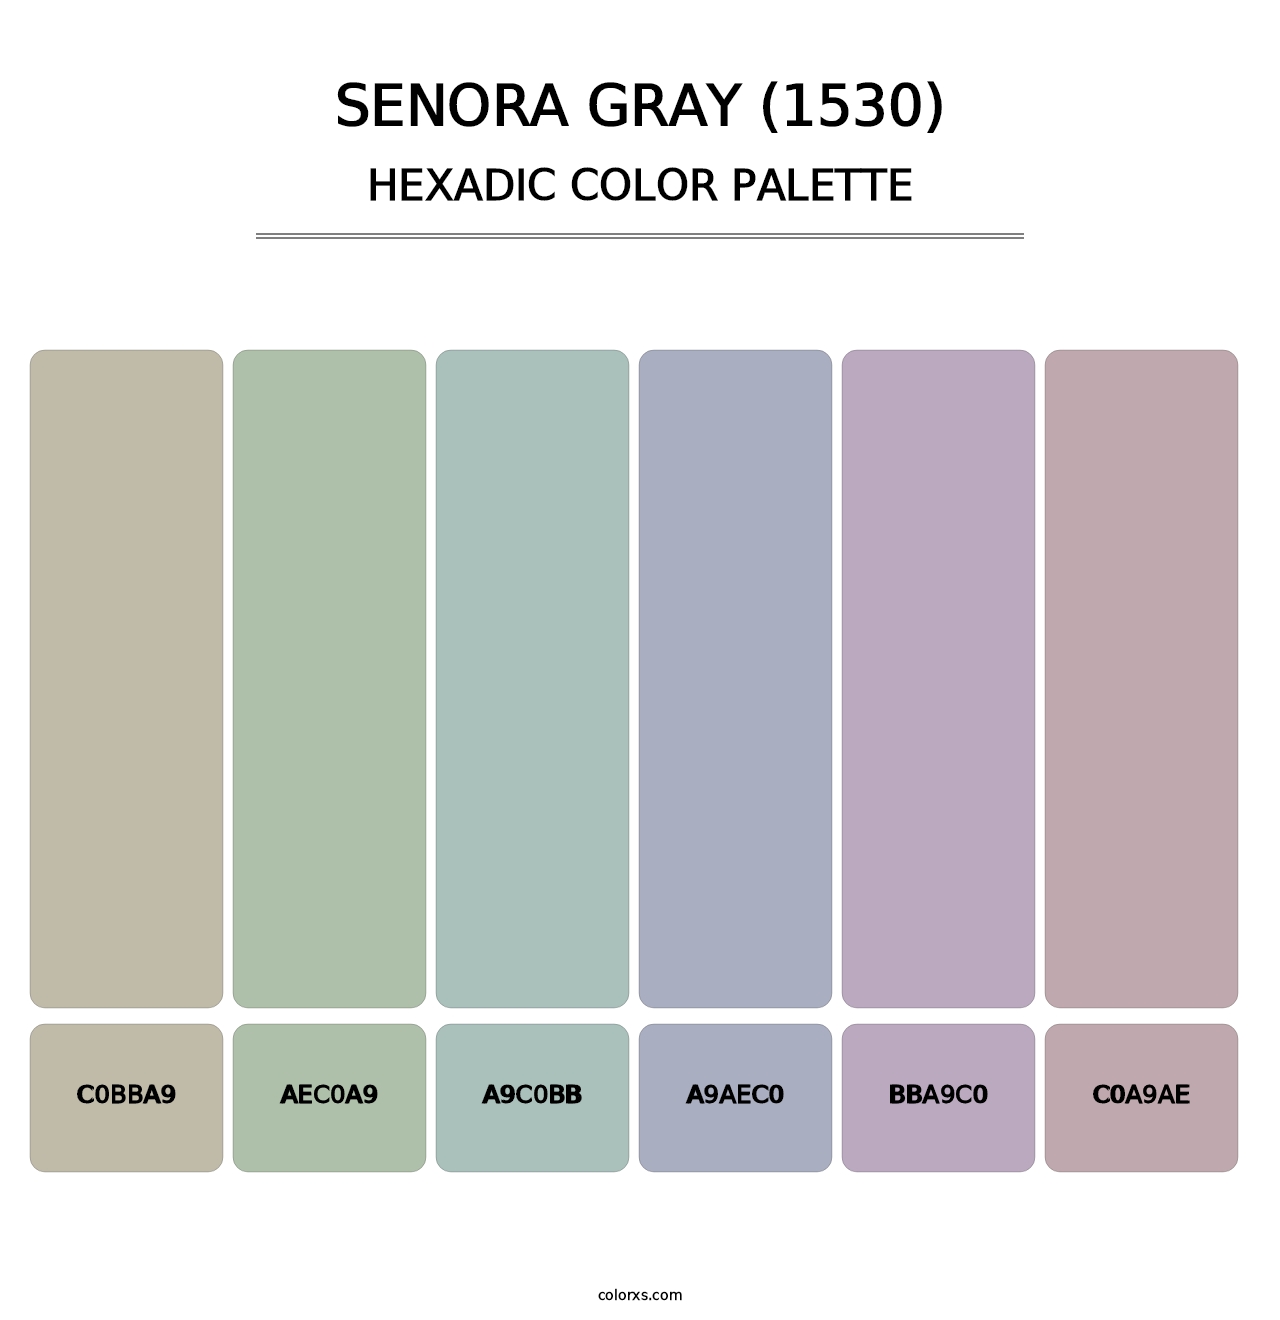 Senora Gray (1530) - Hexadic Color Palette